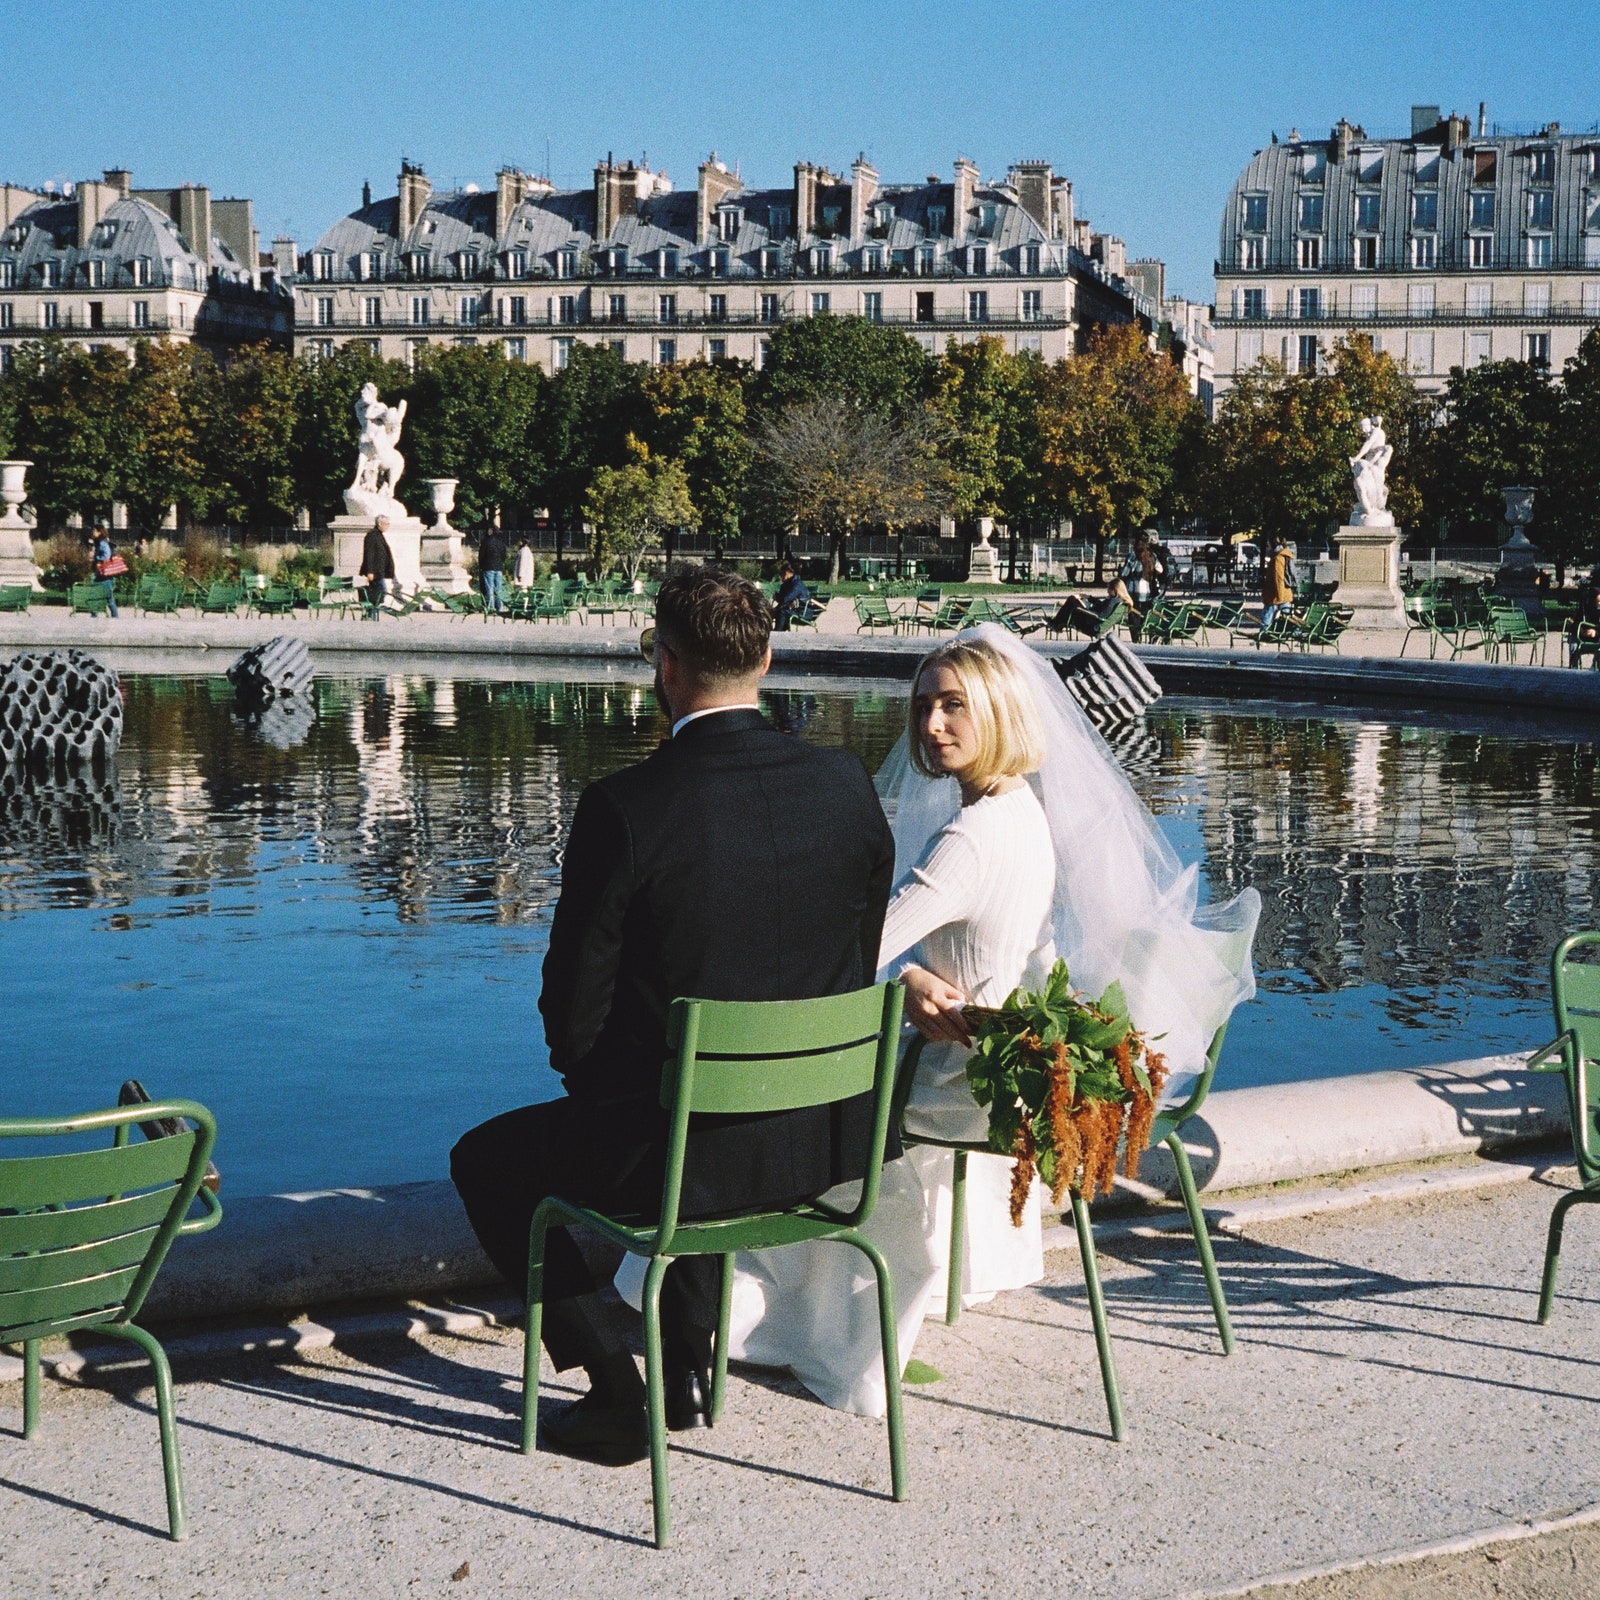 Мы не можем перестать любоваться фотографиями с парижской свадьбы шведской модницы Фанни Экстранд